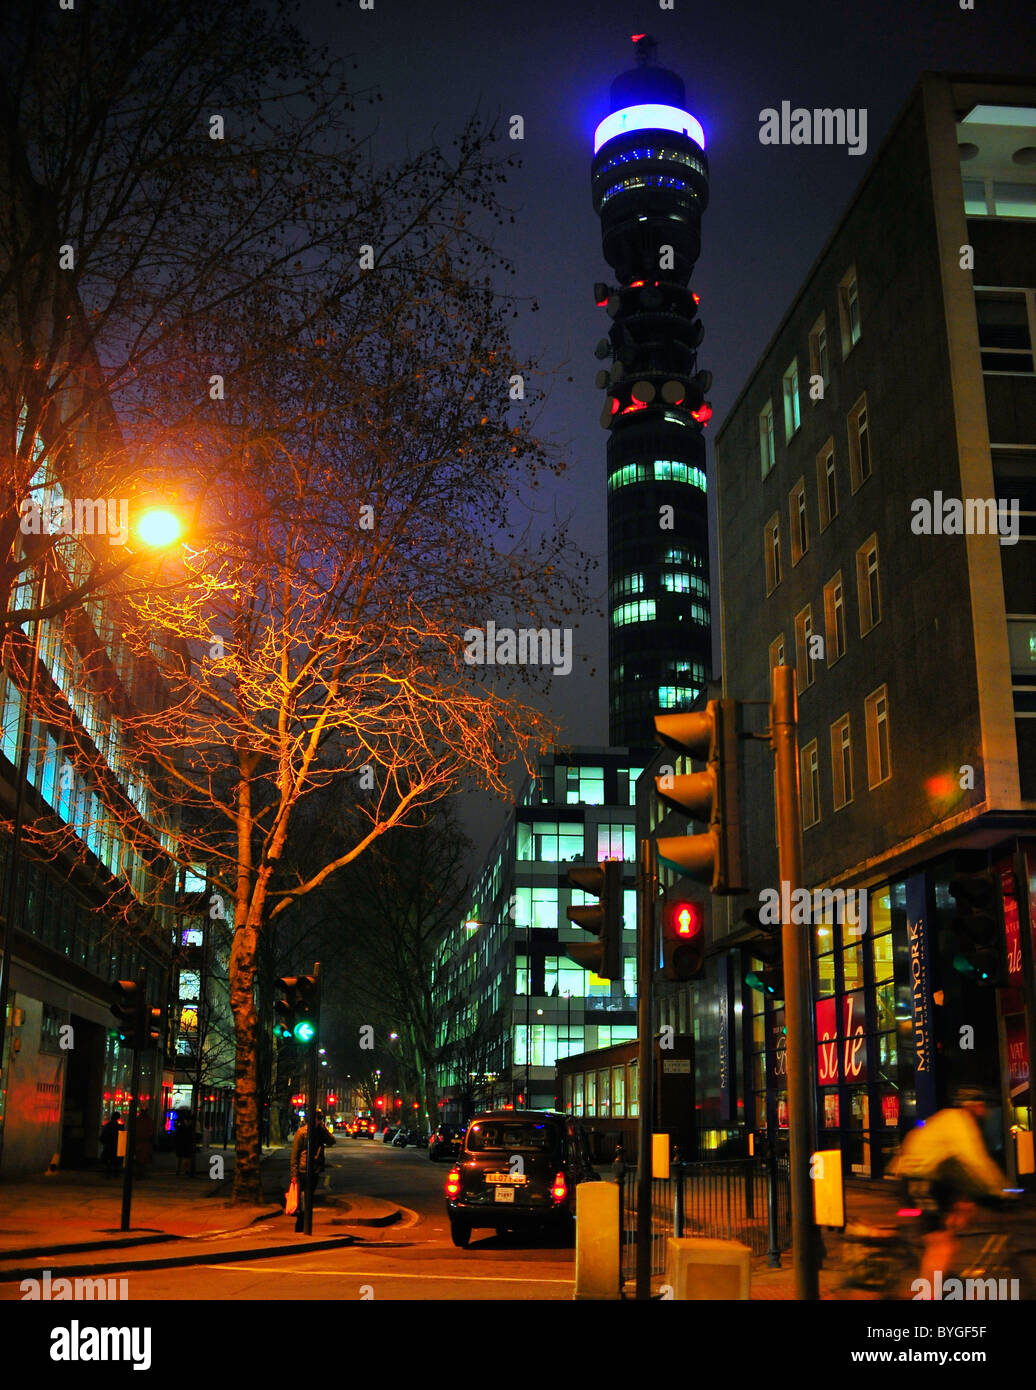 Paisaje urbano por la noche con la Torre BT Post Office Tower, Londres Foto de stock